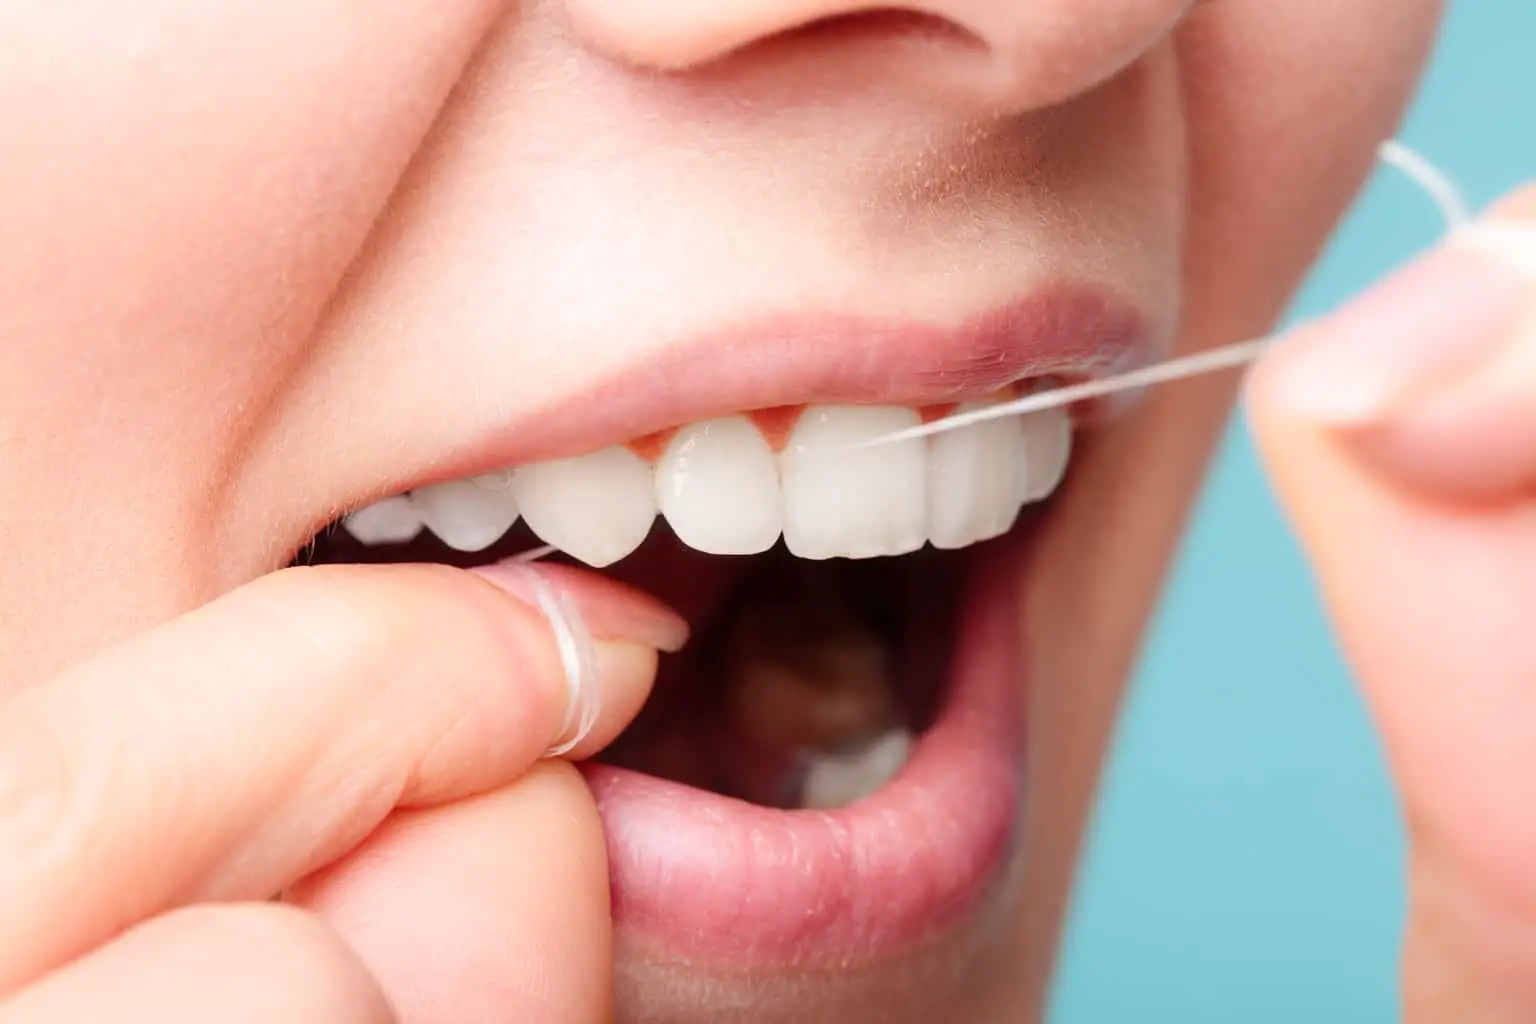 Alinear Aburrido Regan Hilo dental ecológico: alternativas seguras (sin plástico y biodegradables)